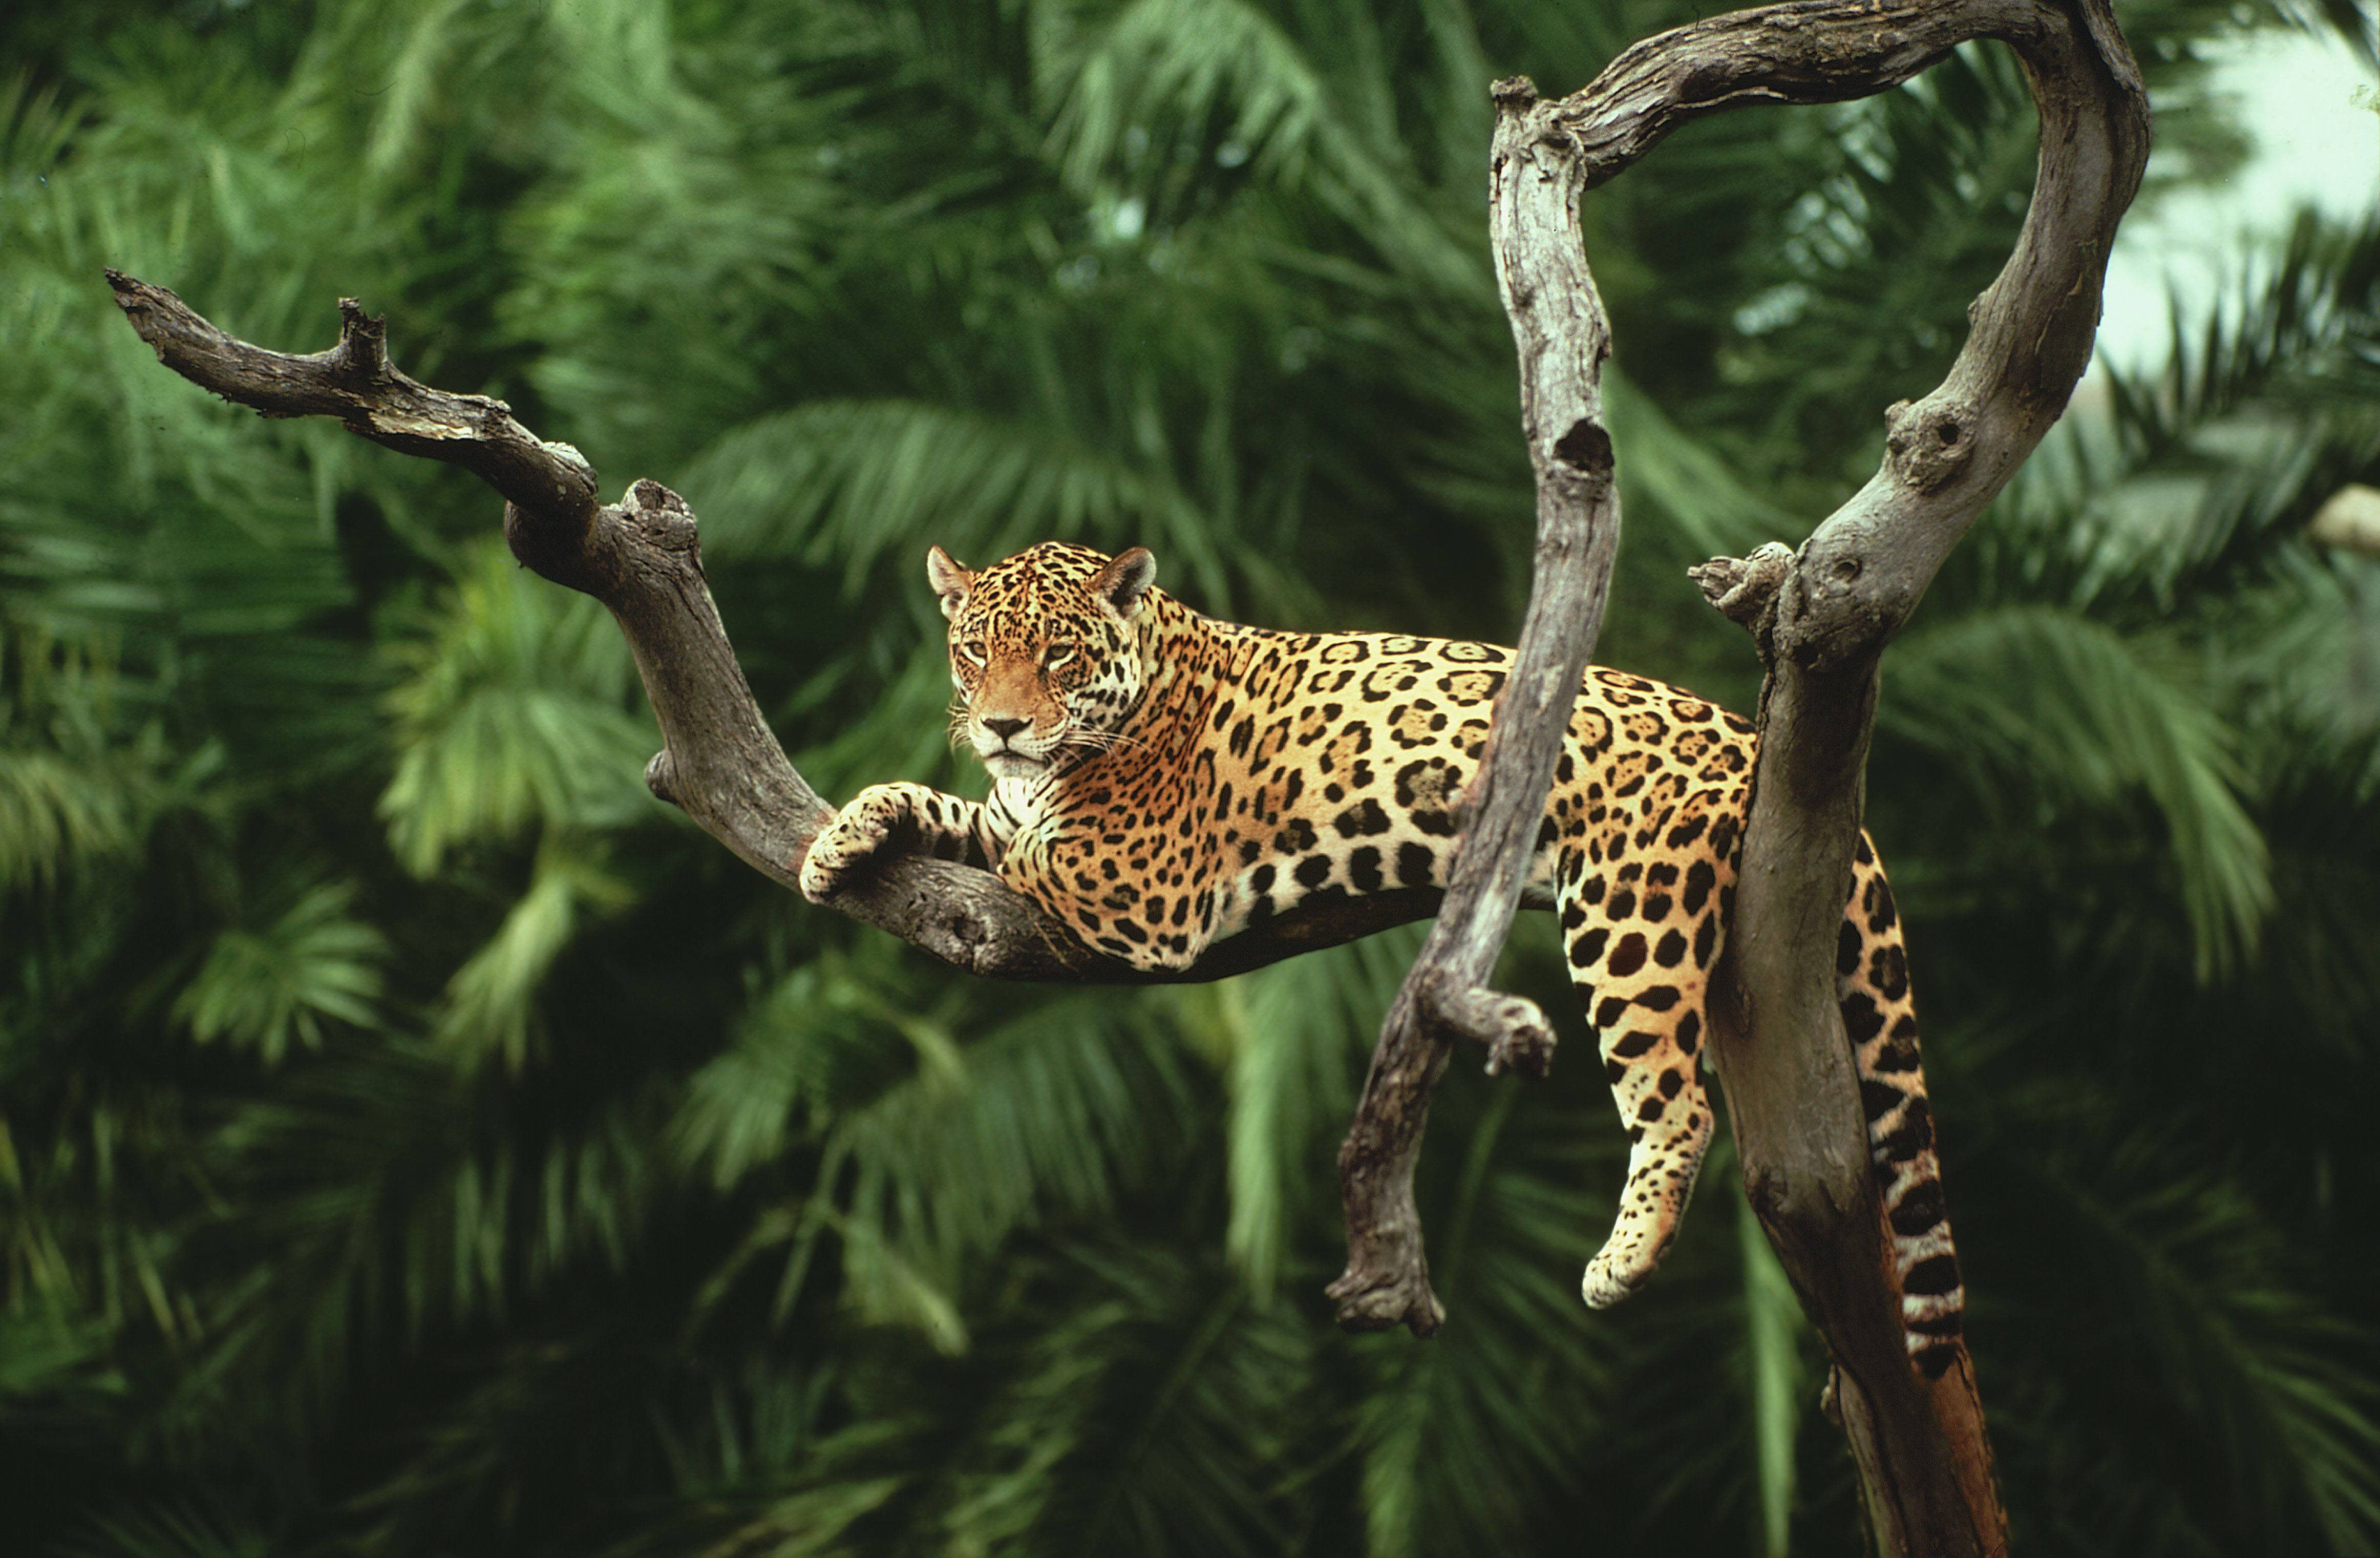 tropical rainforest animals wallpaper